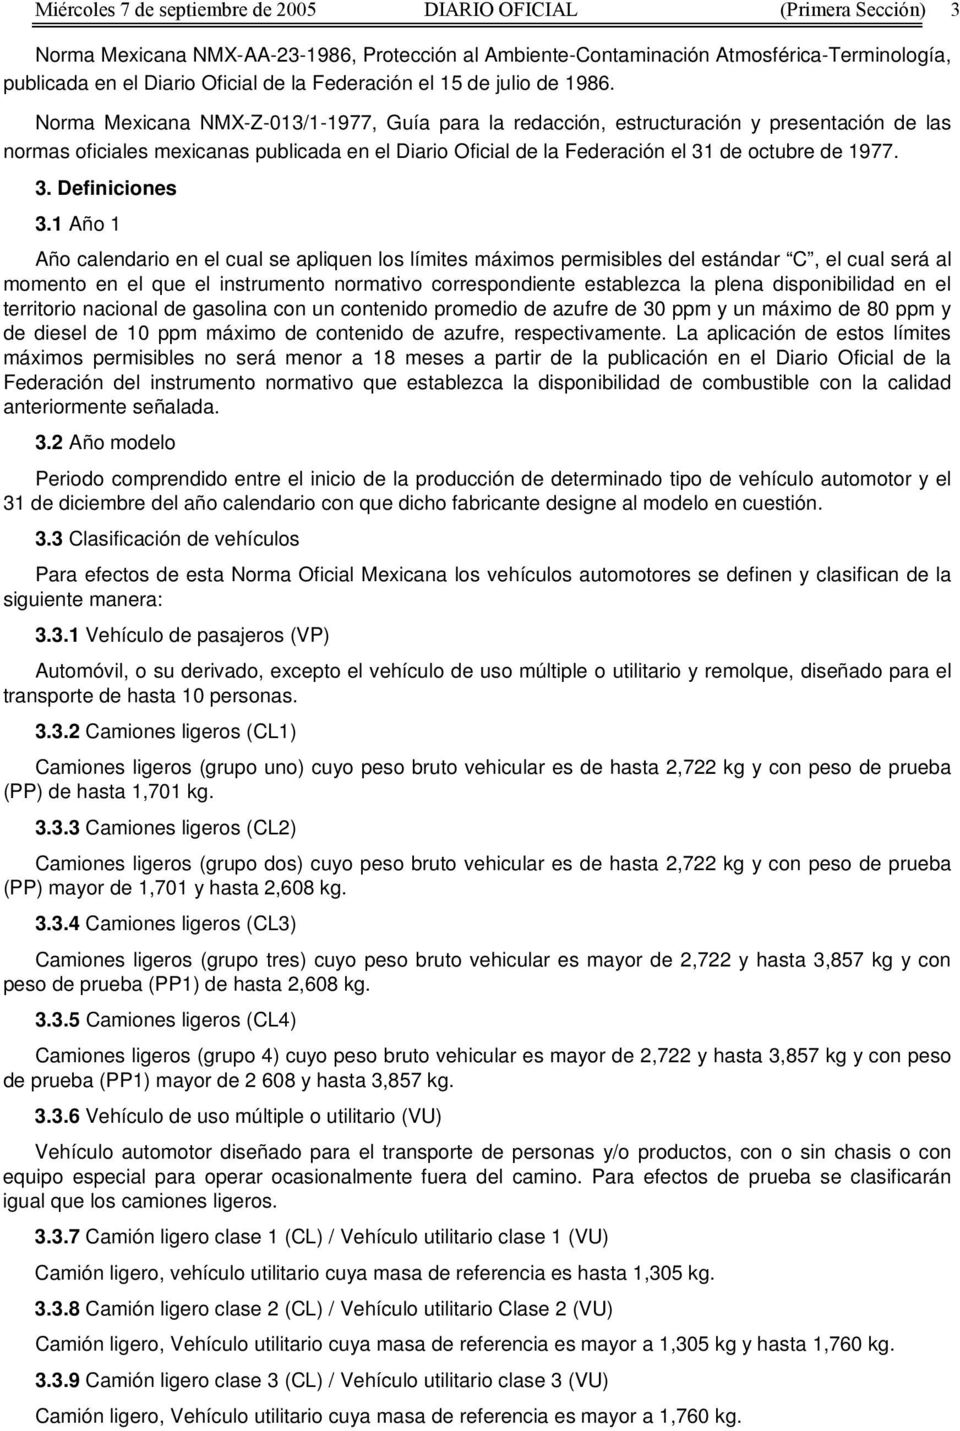 Norma Mexicana NMX-Z-013/1-1977, Guía para la redacción, estructuración y presentación de las normas oficiales mexicanas publicada en el Diario Oficial de la Federación el 31 de octubre de 1977. 3. Definiciones 3.